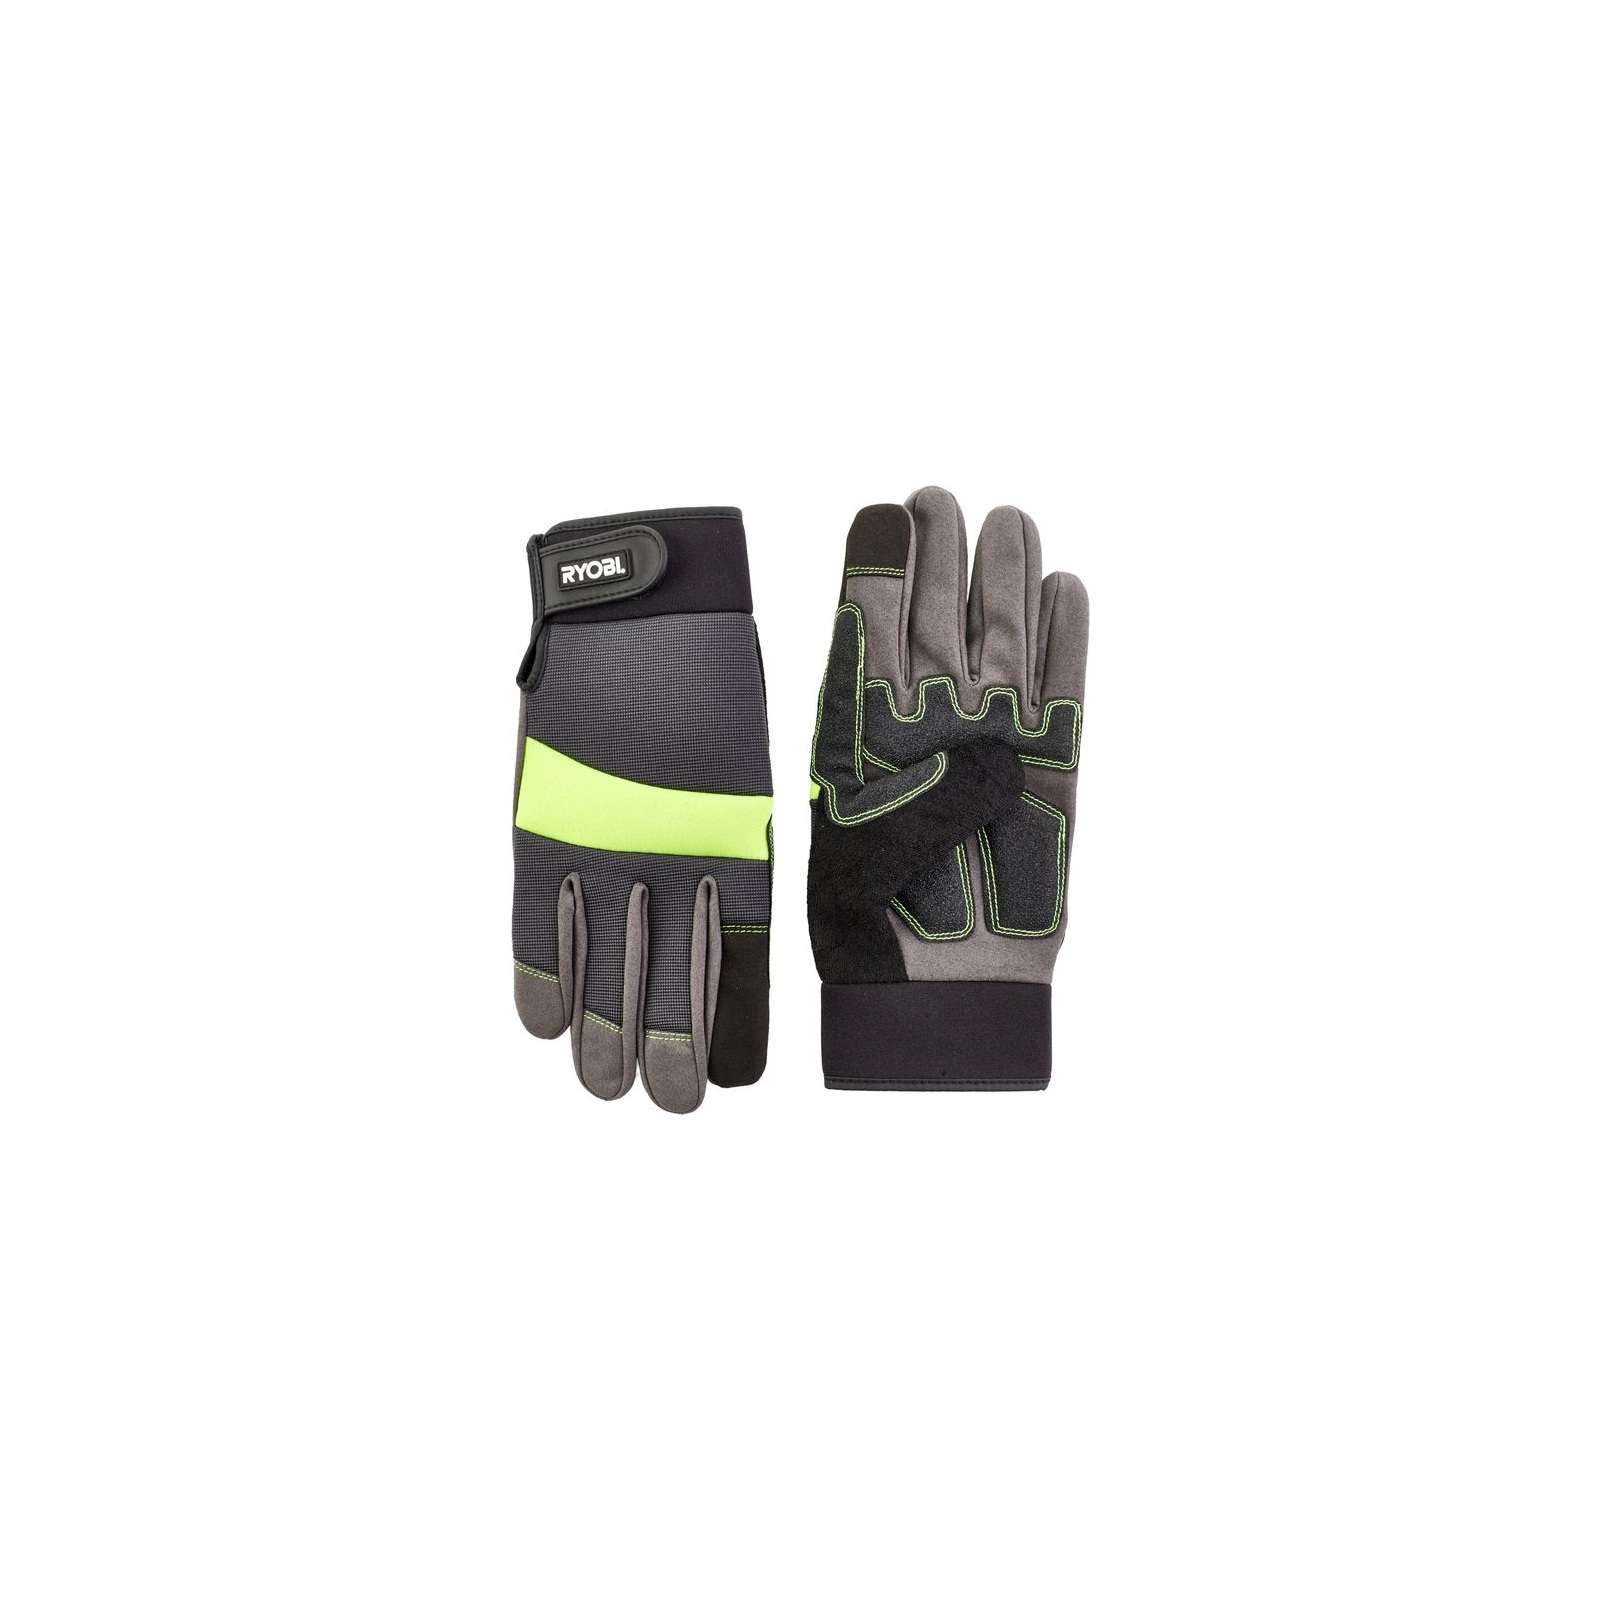 Захисні рукавиці Ryobi RAC811L, вологозахист, р. L (5132002991)